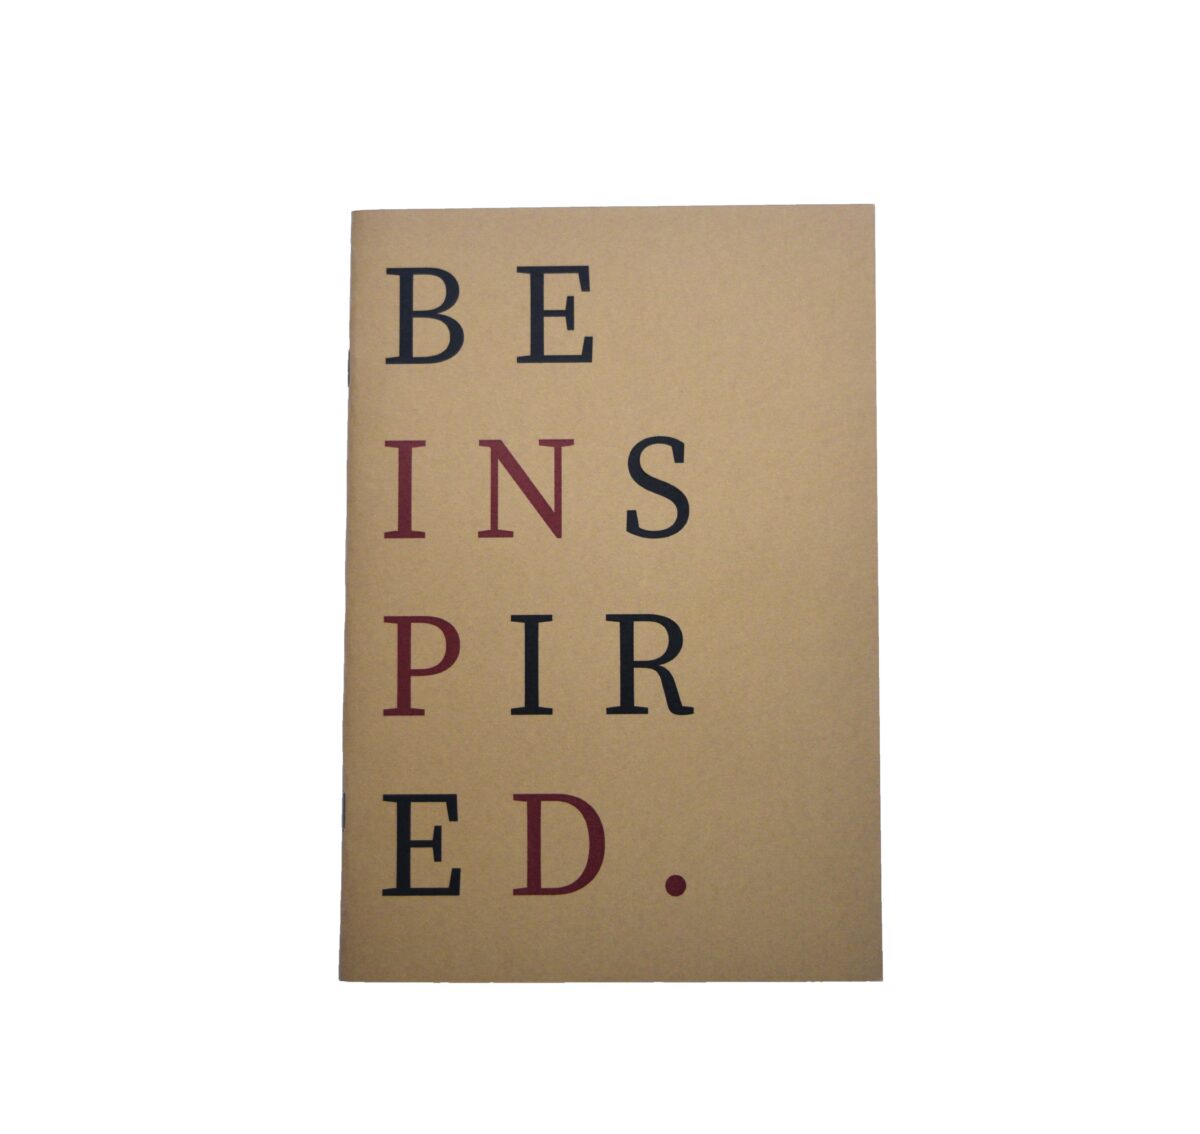 “Be inspired” “Be inspired” “Be inspired” 4